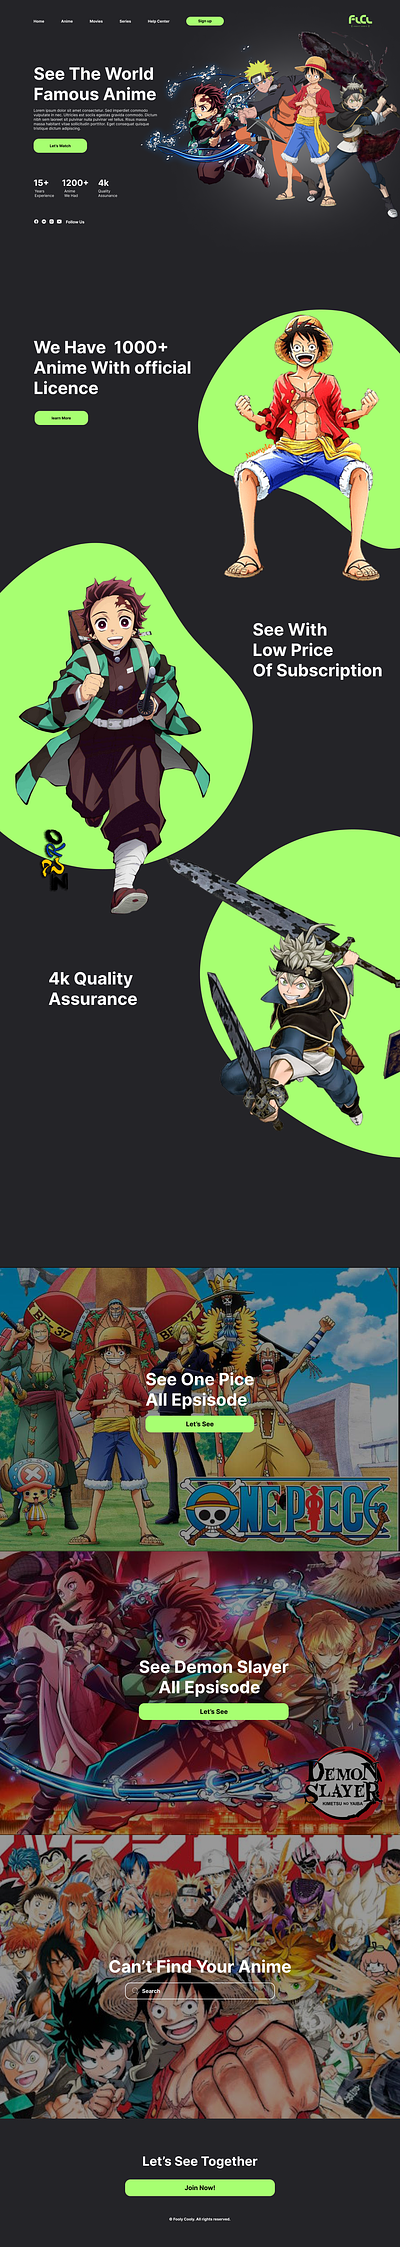 Anime Website anime anime and cartoon anime website app app design cartoon graphics design ui ux website